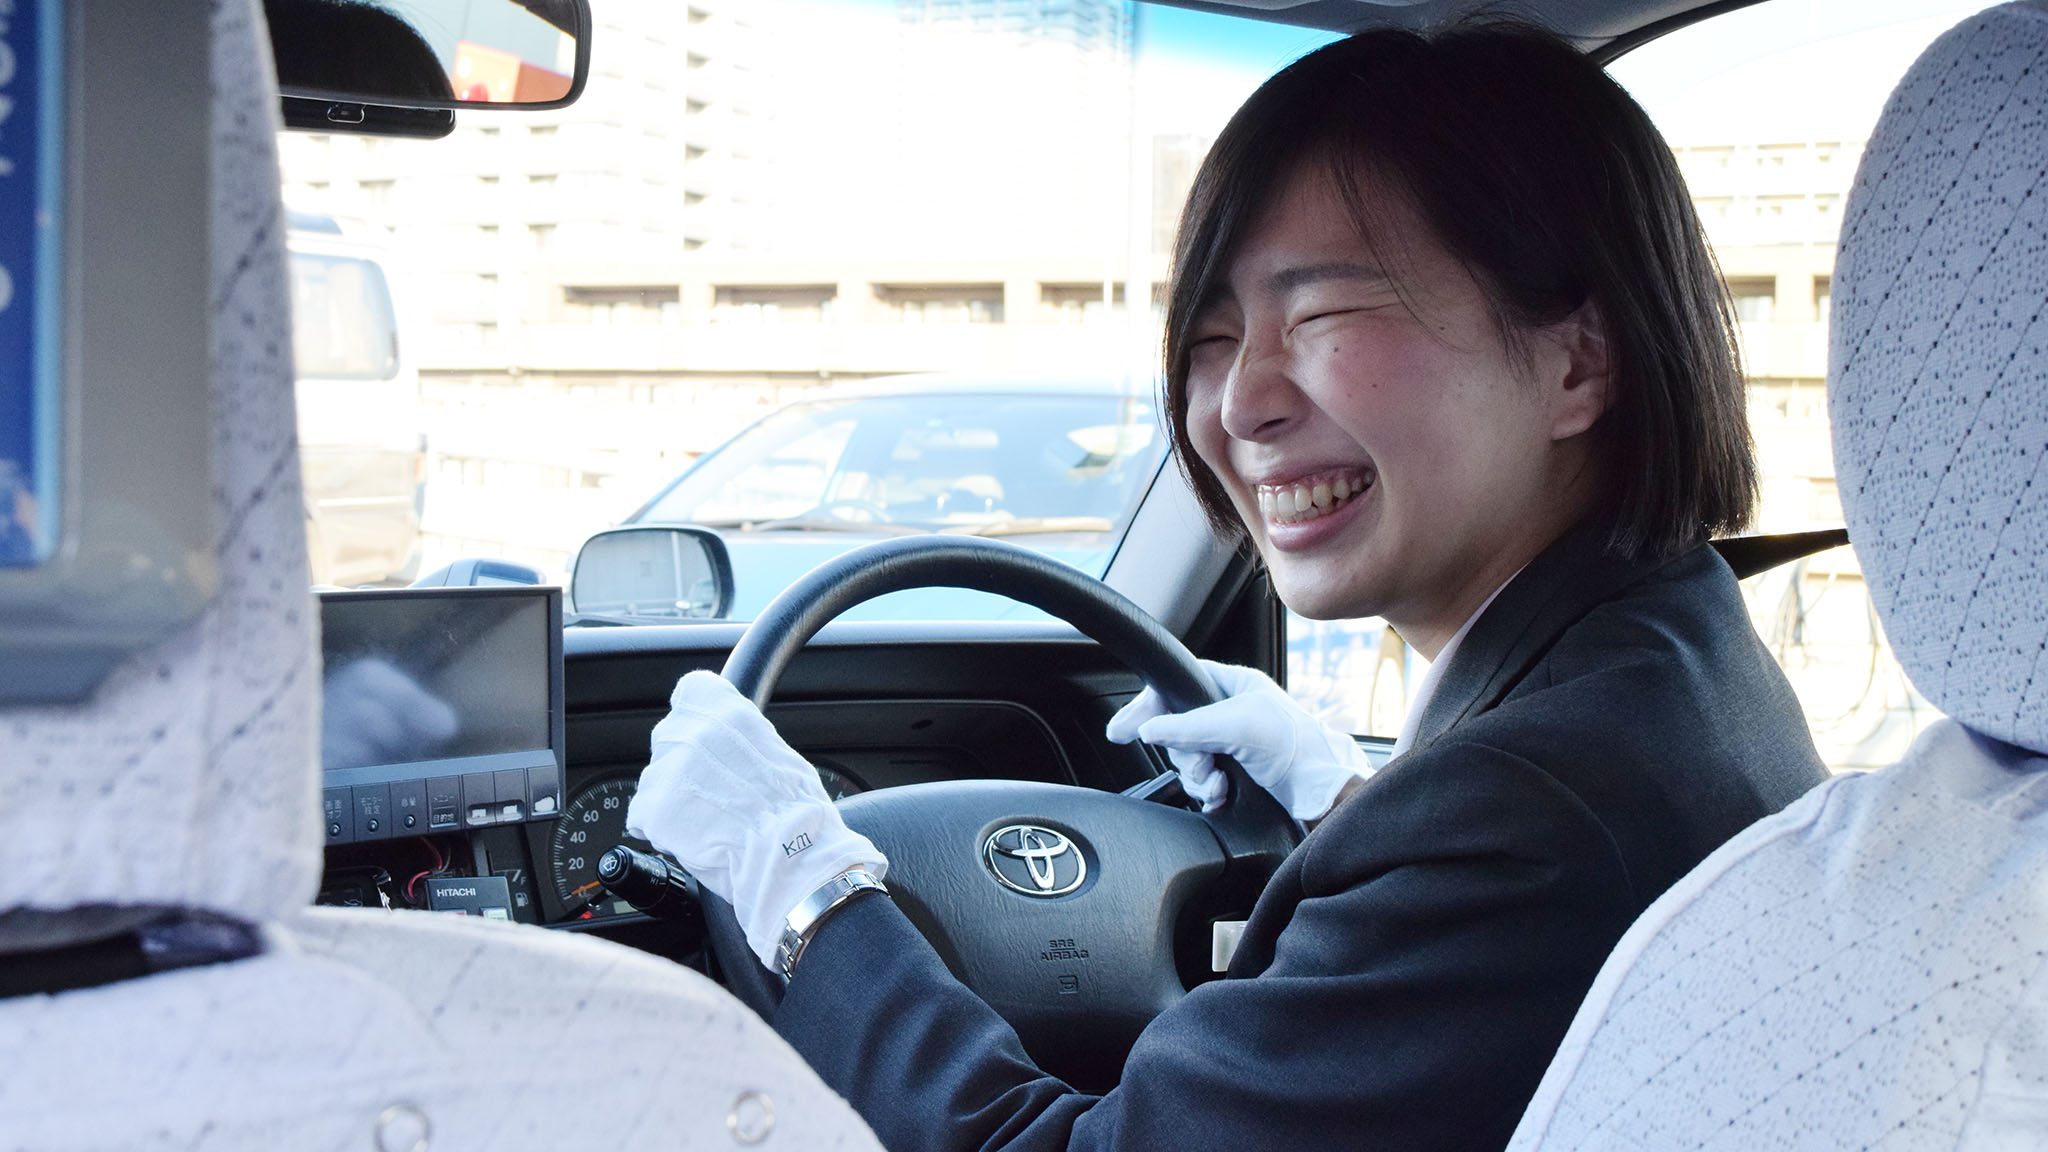 24歳で100名以上のタクシードライバーを支える新卒の女性班長。「頼ってもらえる存在になりたい」